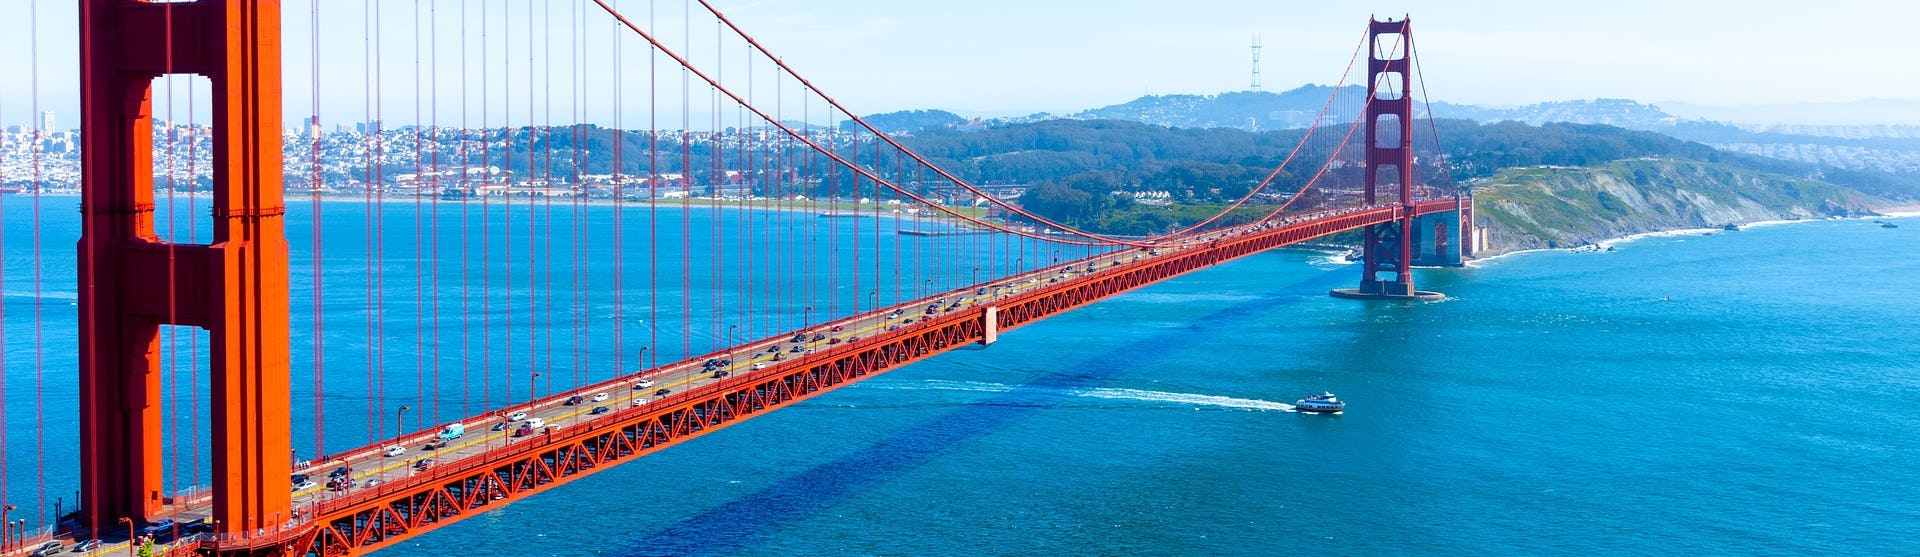 Vy snett uppifrån på den ikoniska och röda Golden Gate-bron i San Francisco.